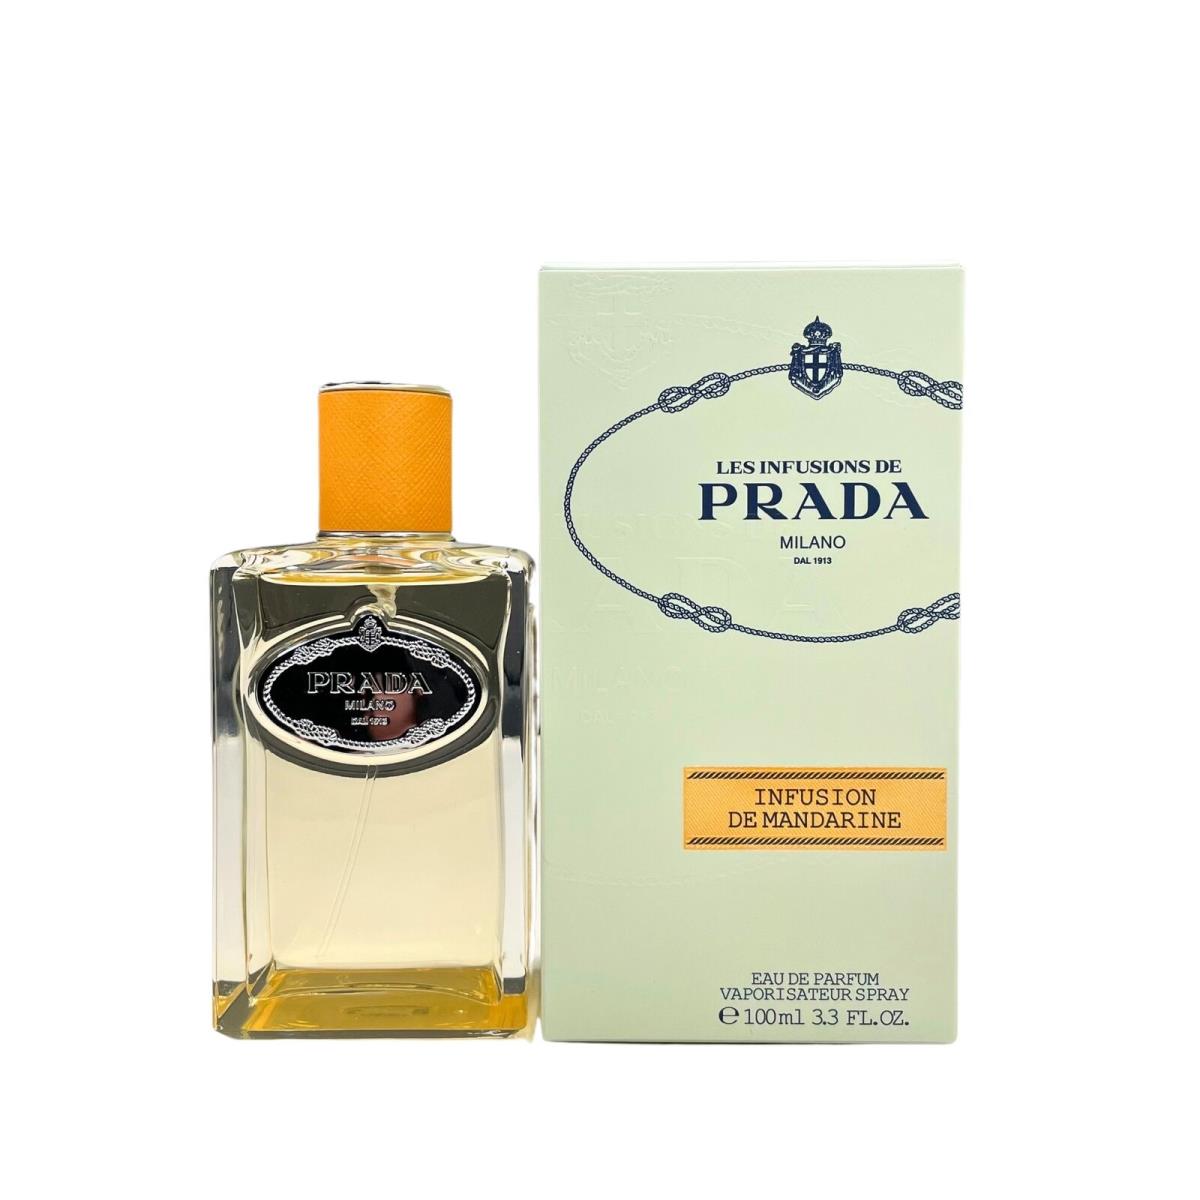 Prada Infusion De Mandarine Eau De Parfum Unisex 3.3 oz / 100 ml - Spray